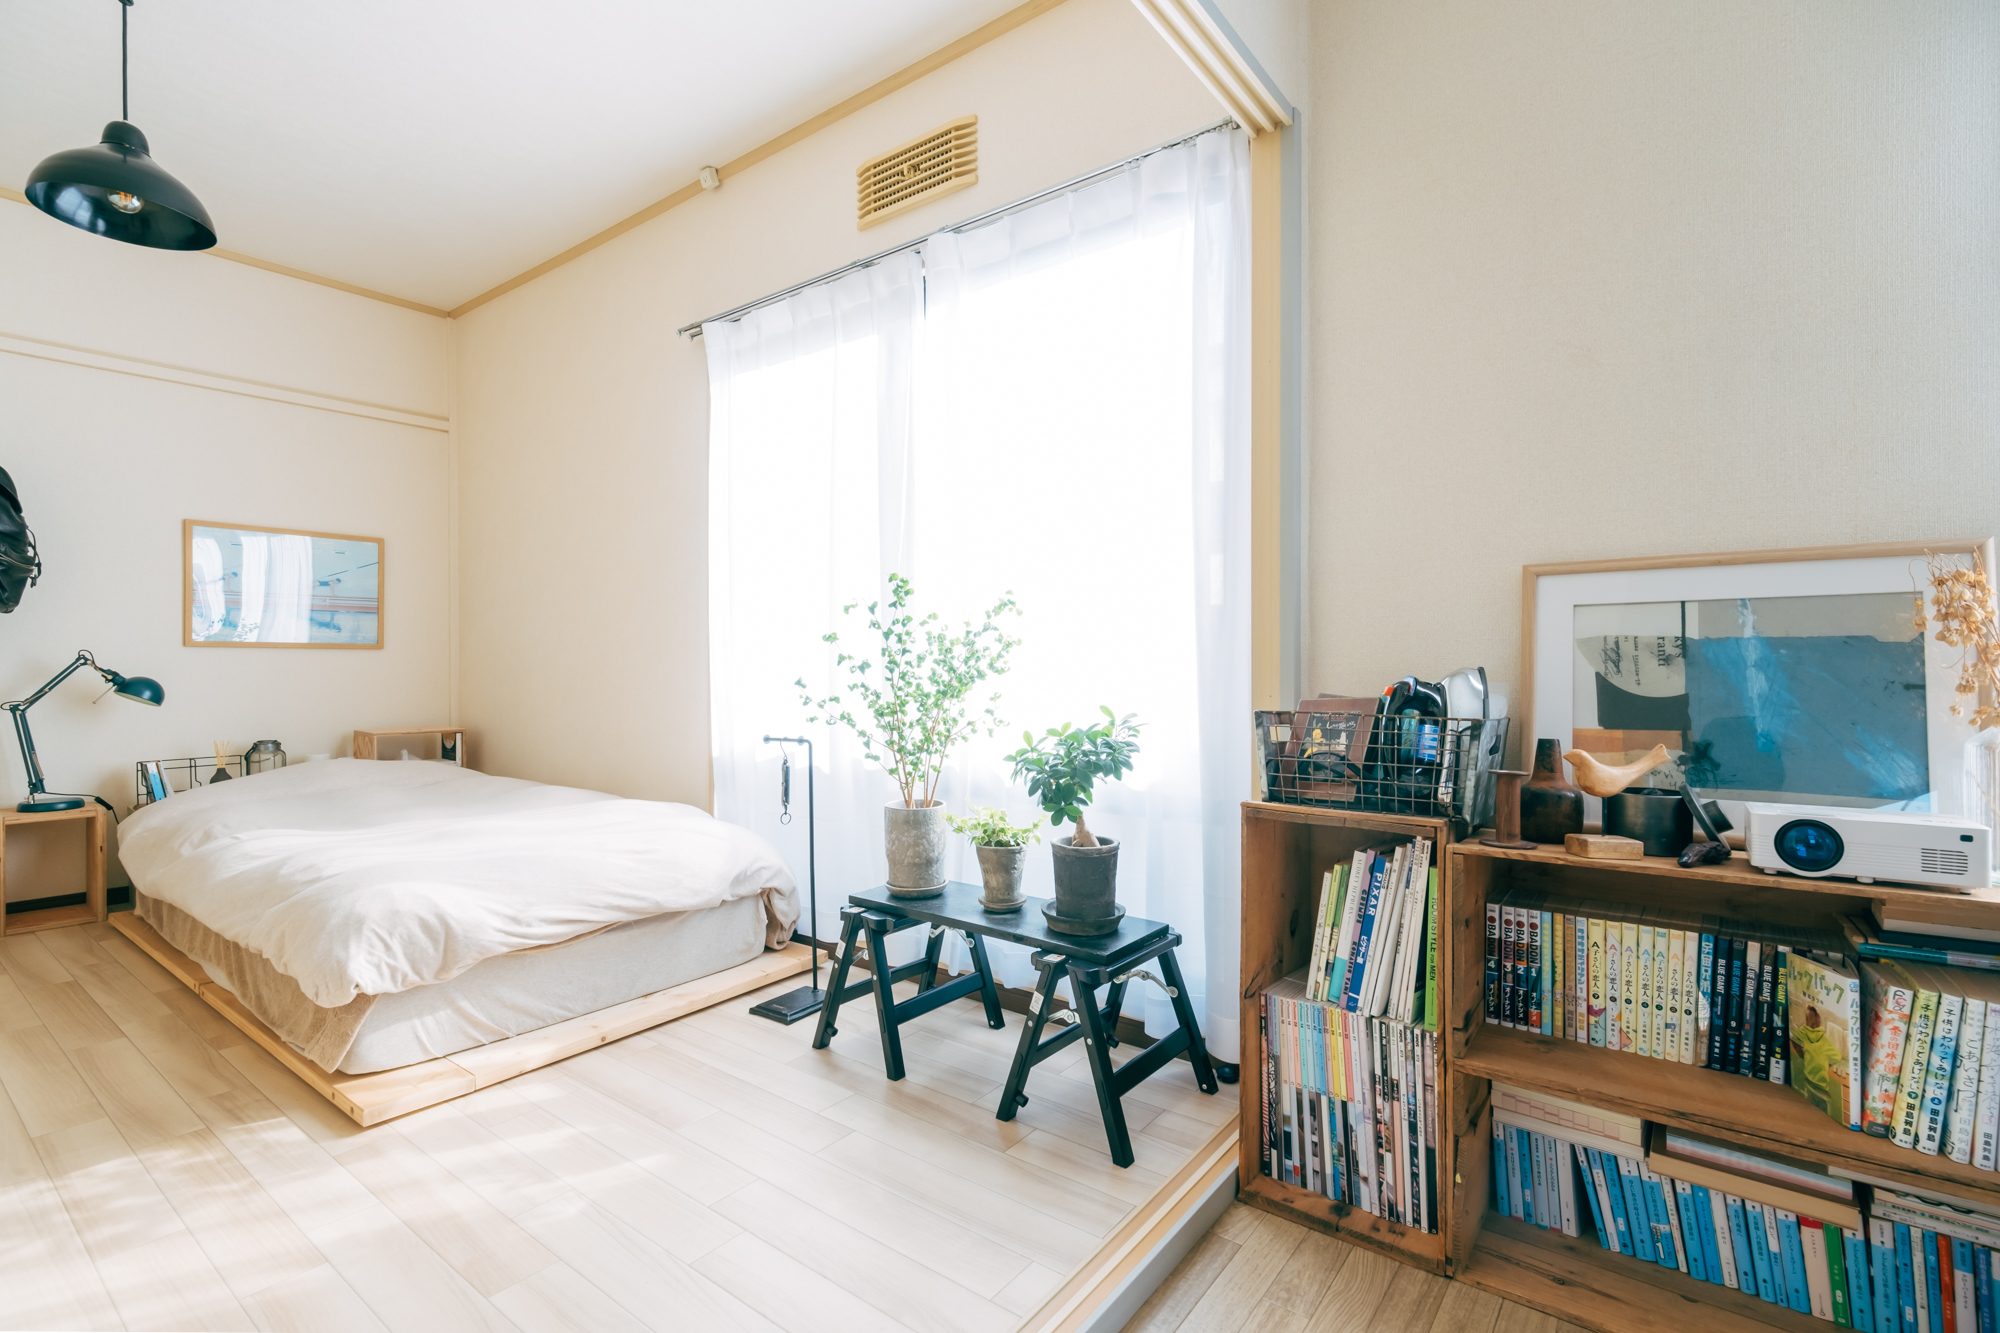 寝室はリビング同様にシンプルな空間でありながら、植物やアートを差し色として活用。